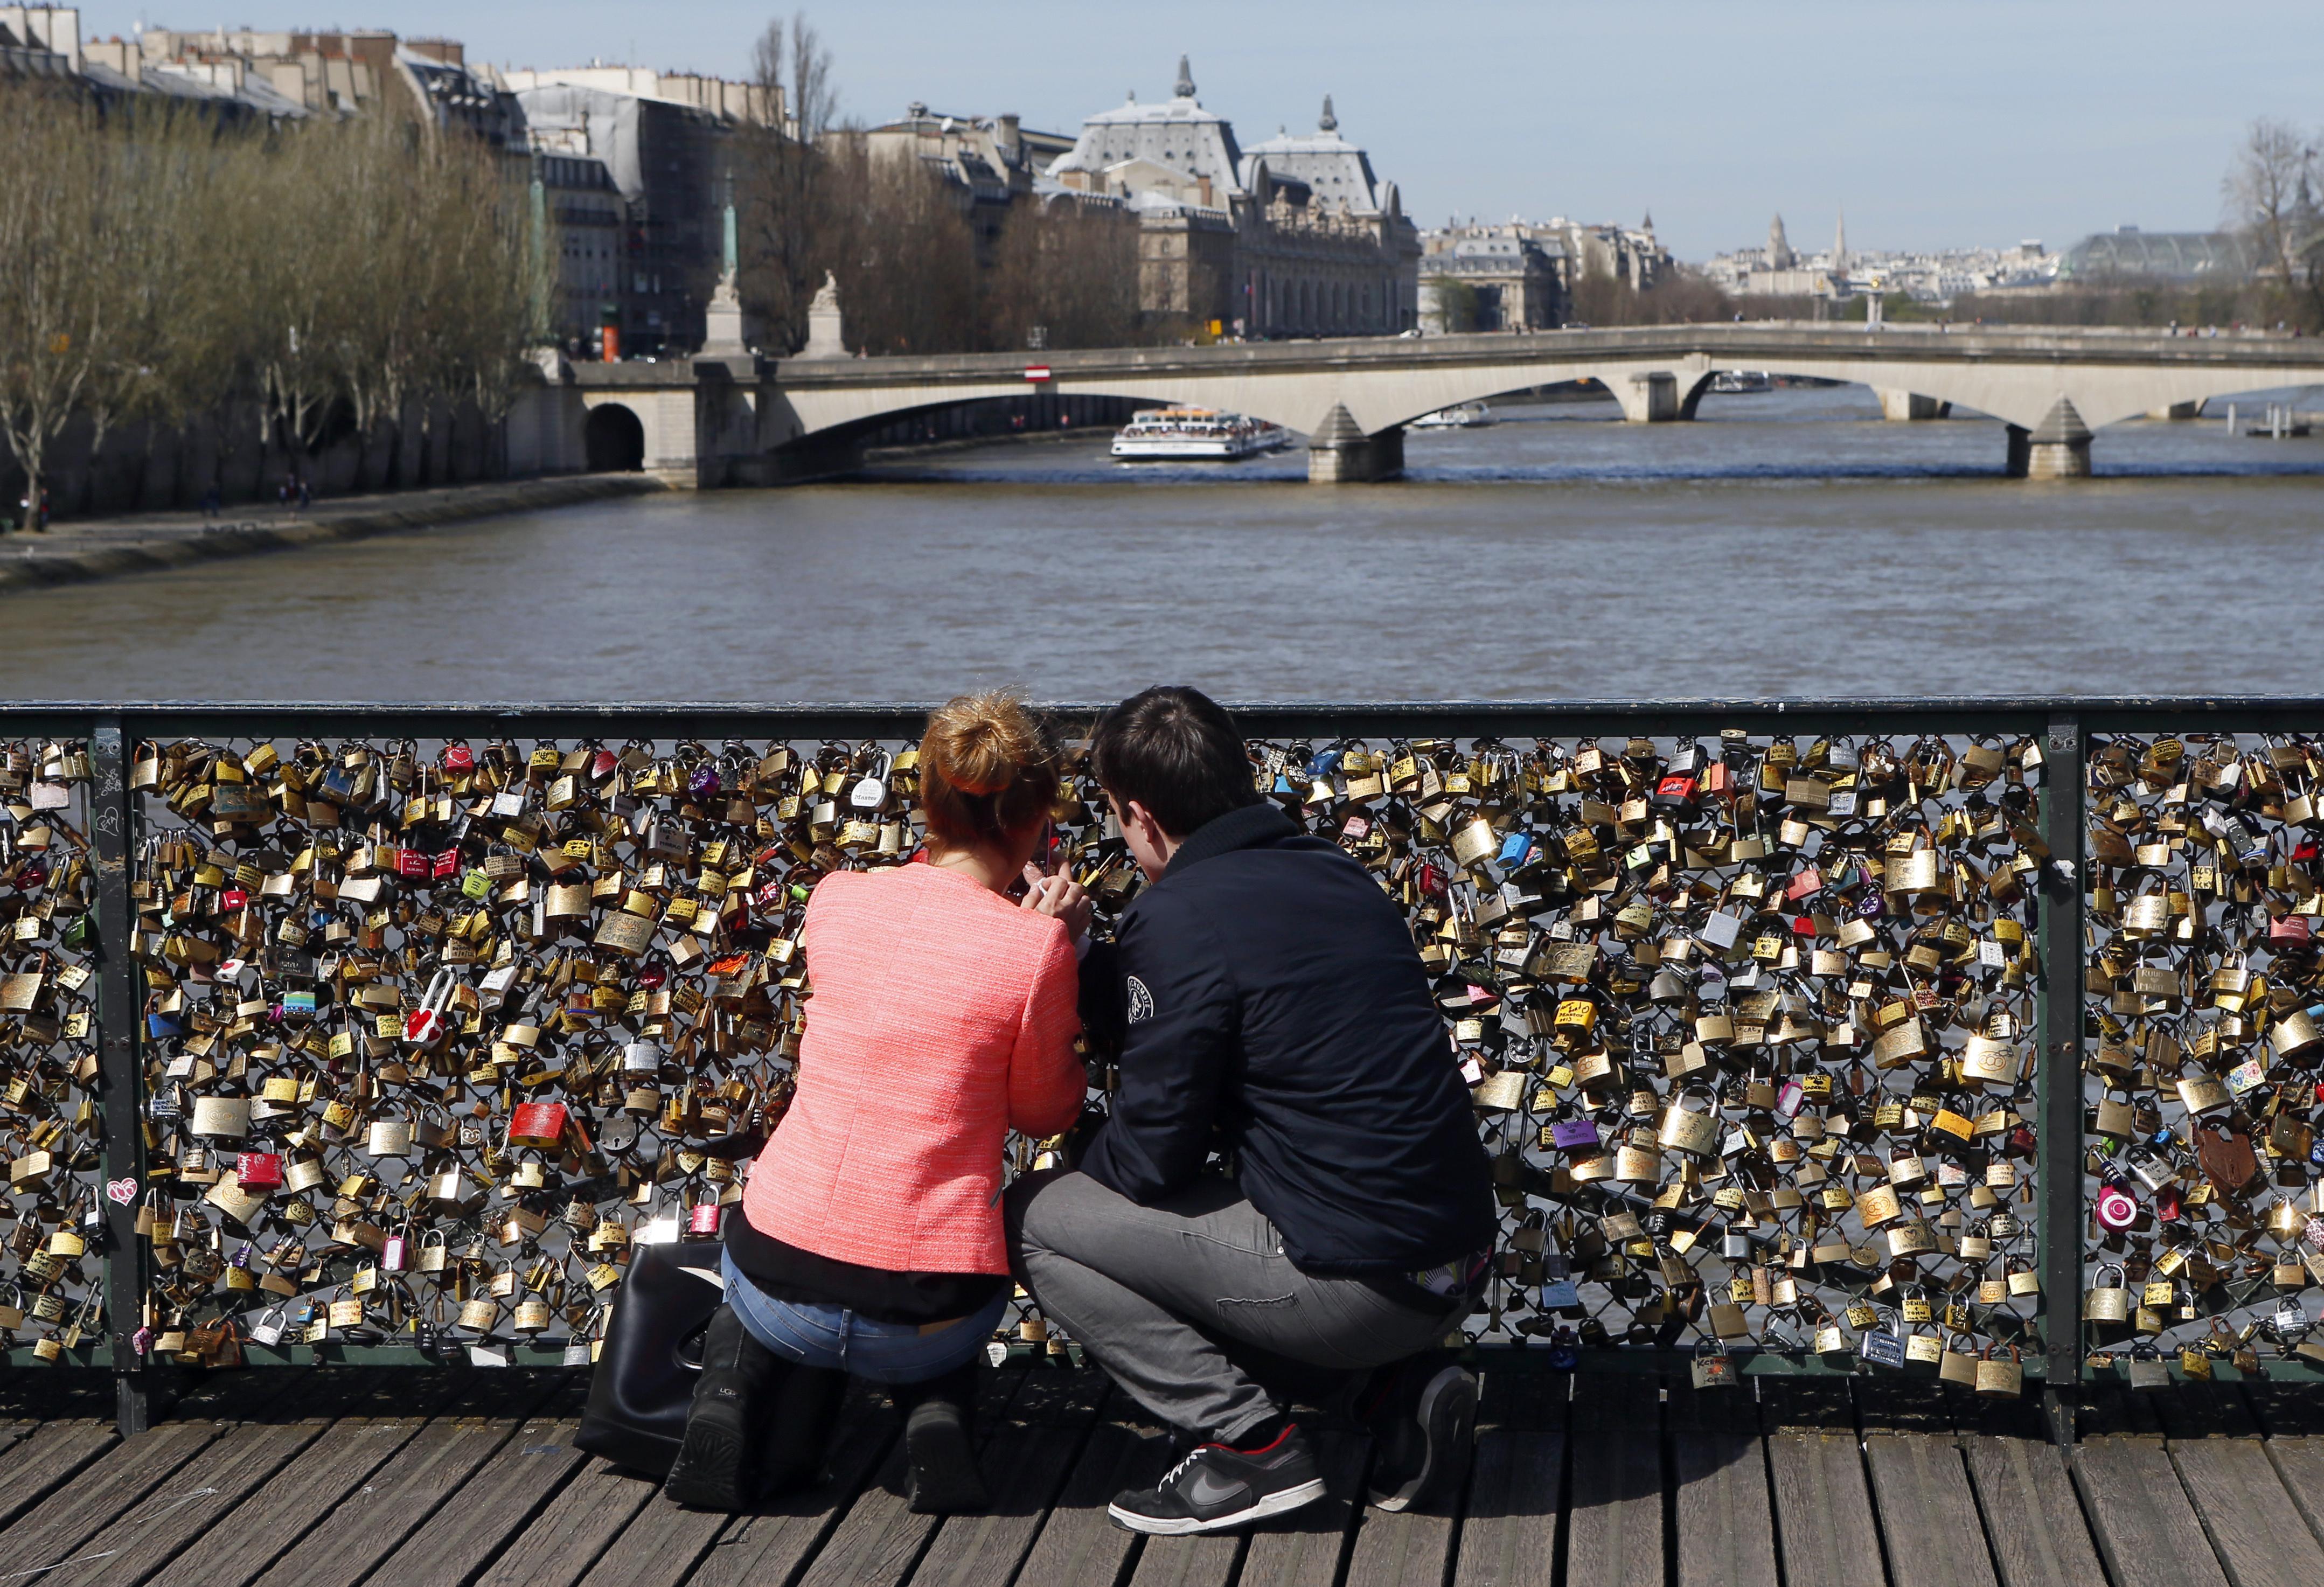 Paris Love Bridge Railing Collapses Under Weight of Locks